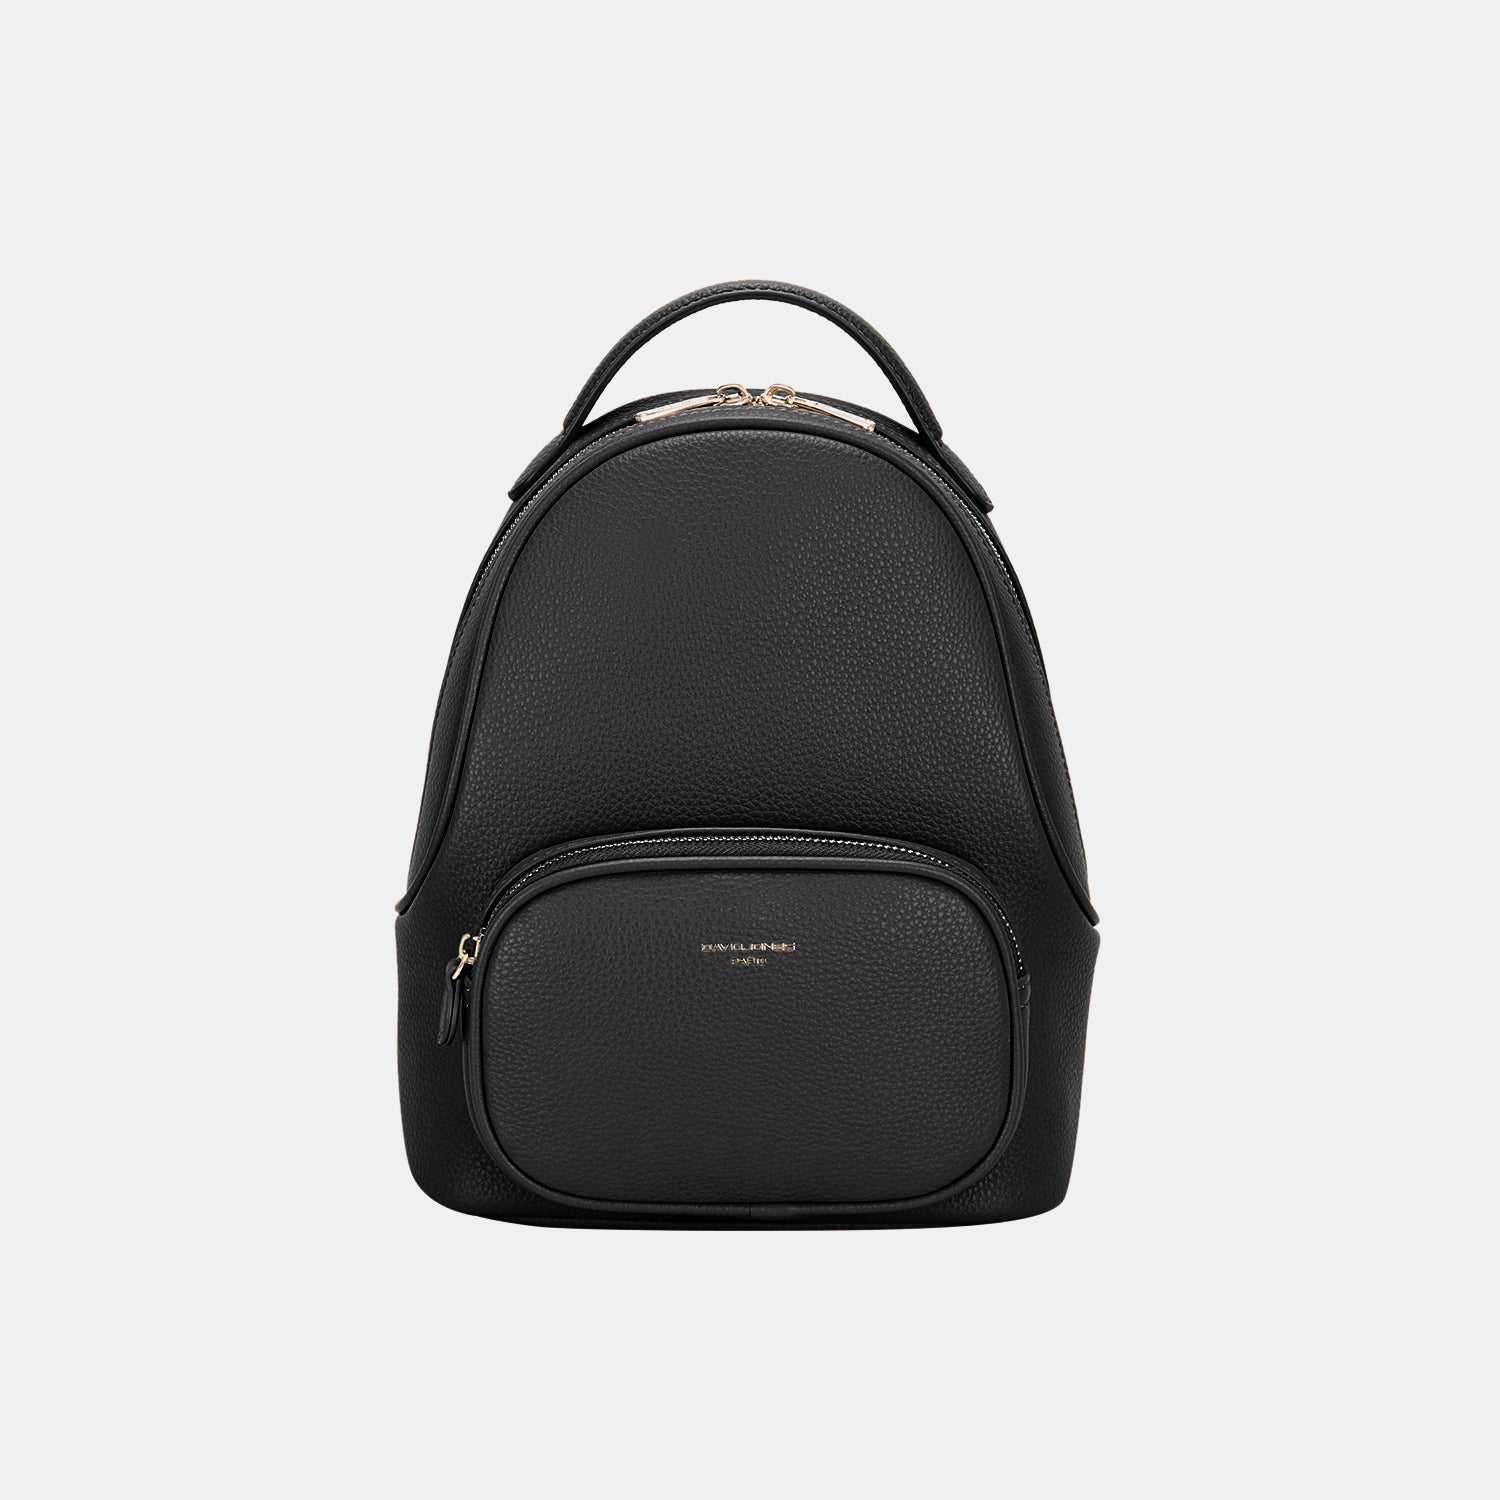 David Jones PU Leather Handle Backpack Black One Size Backpacks JT's Designer Fashion